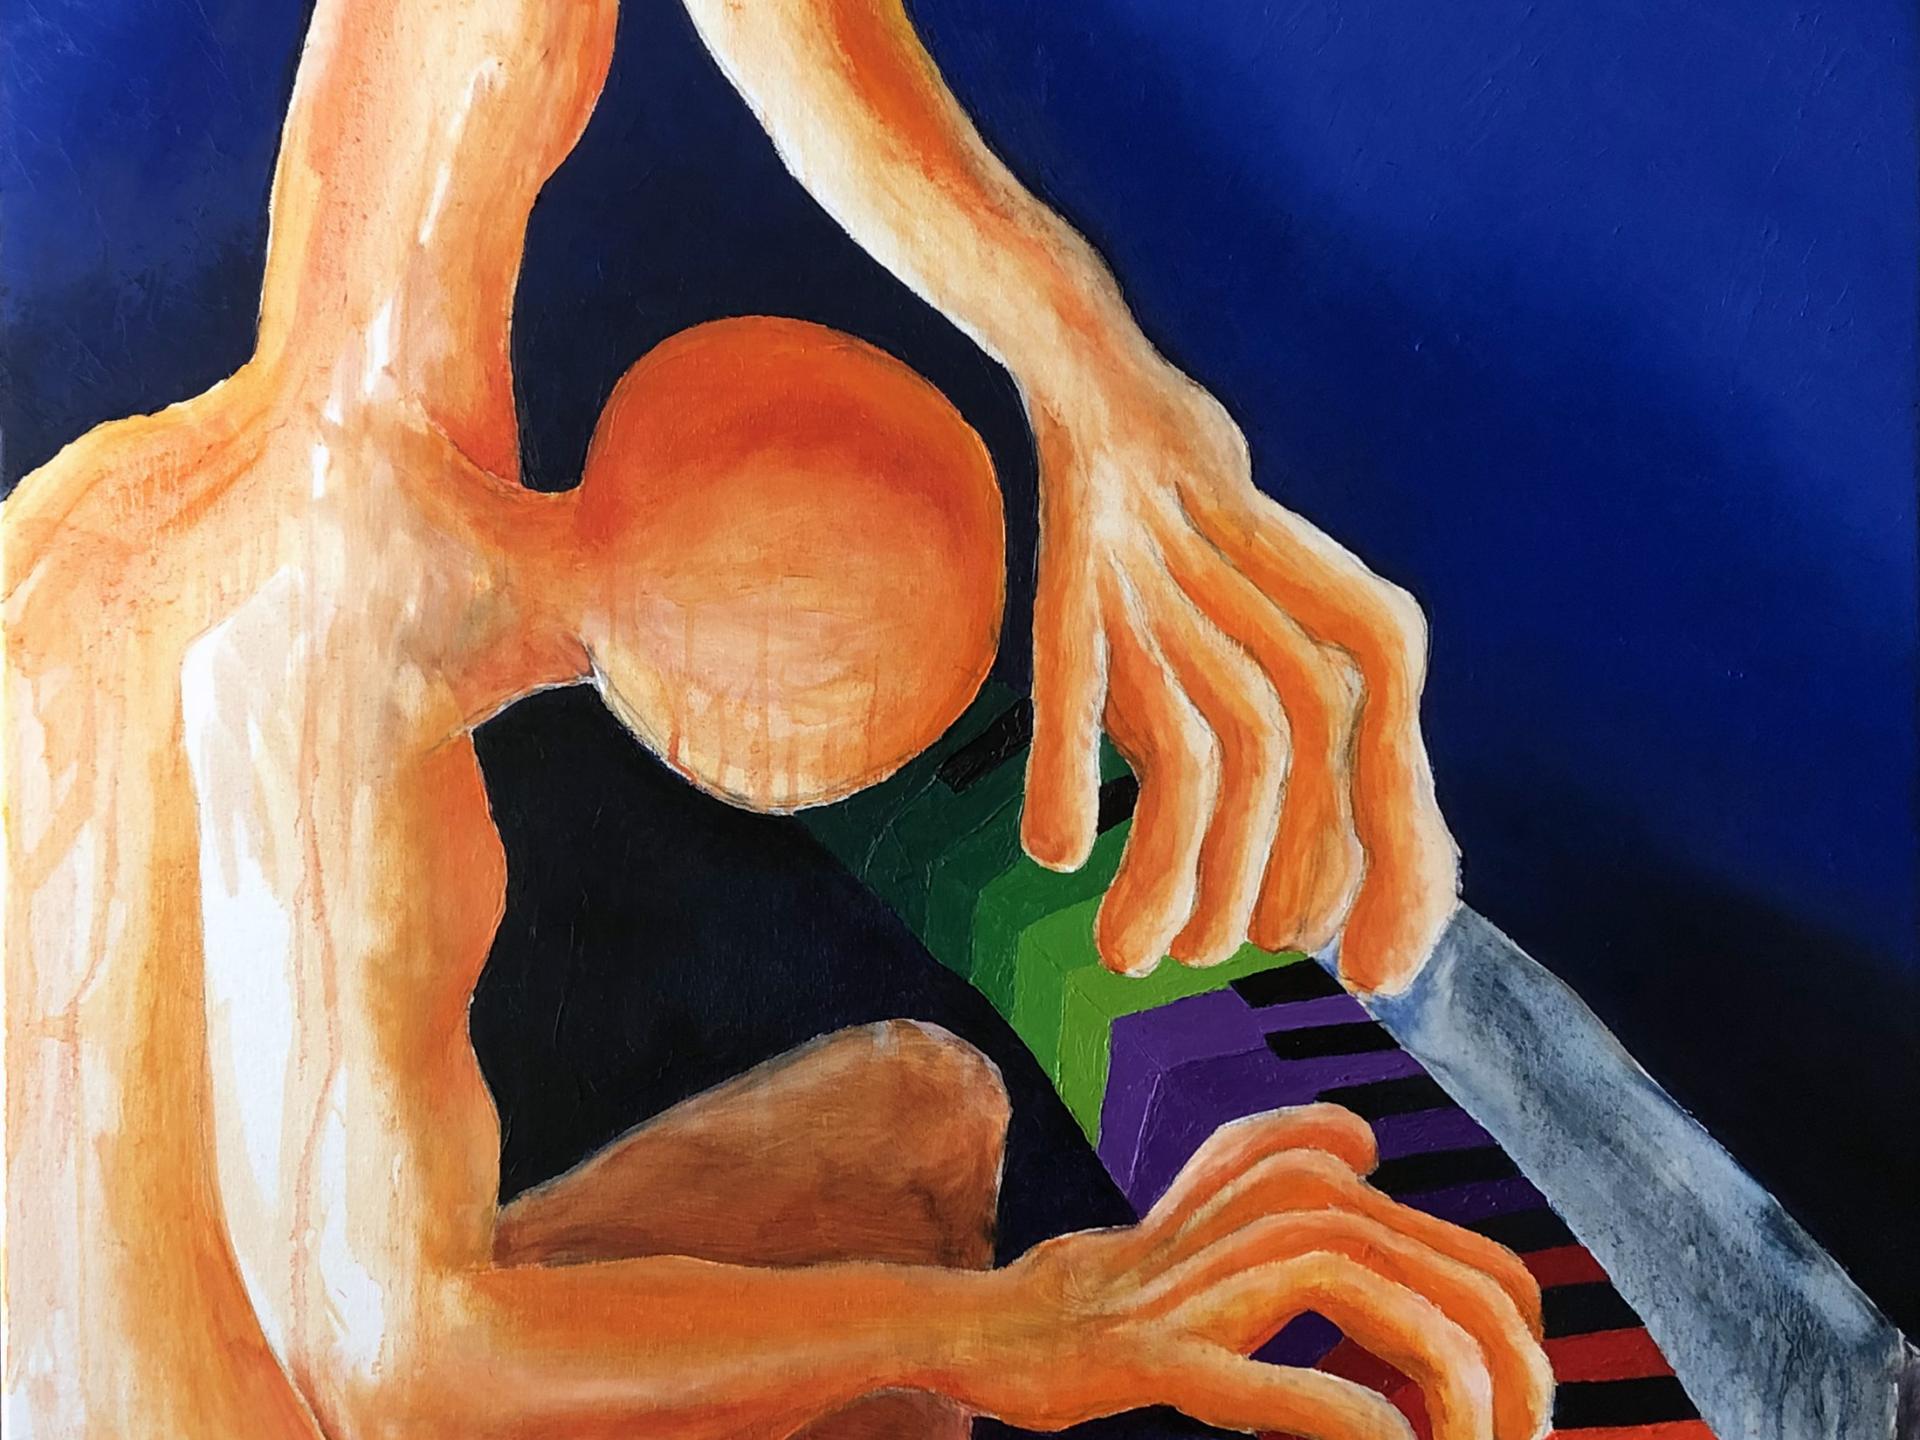 Pintura de óleo sobre tela en que se aprecia una figura humana sin rostro sentada en un banco, tocando un piano/teclado, en tonos naranjas y azules.